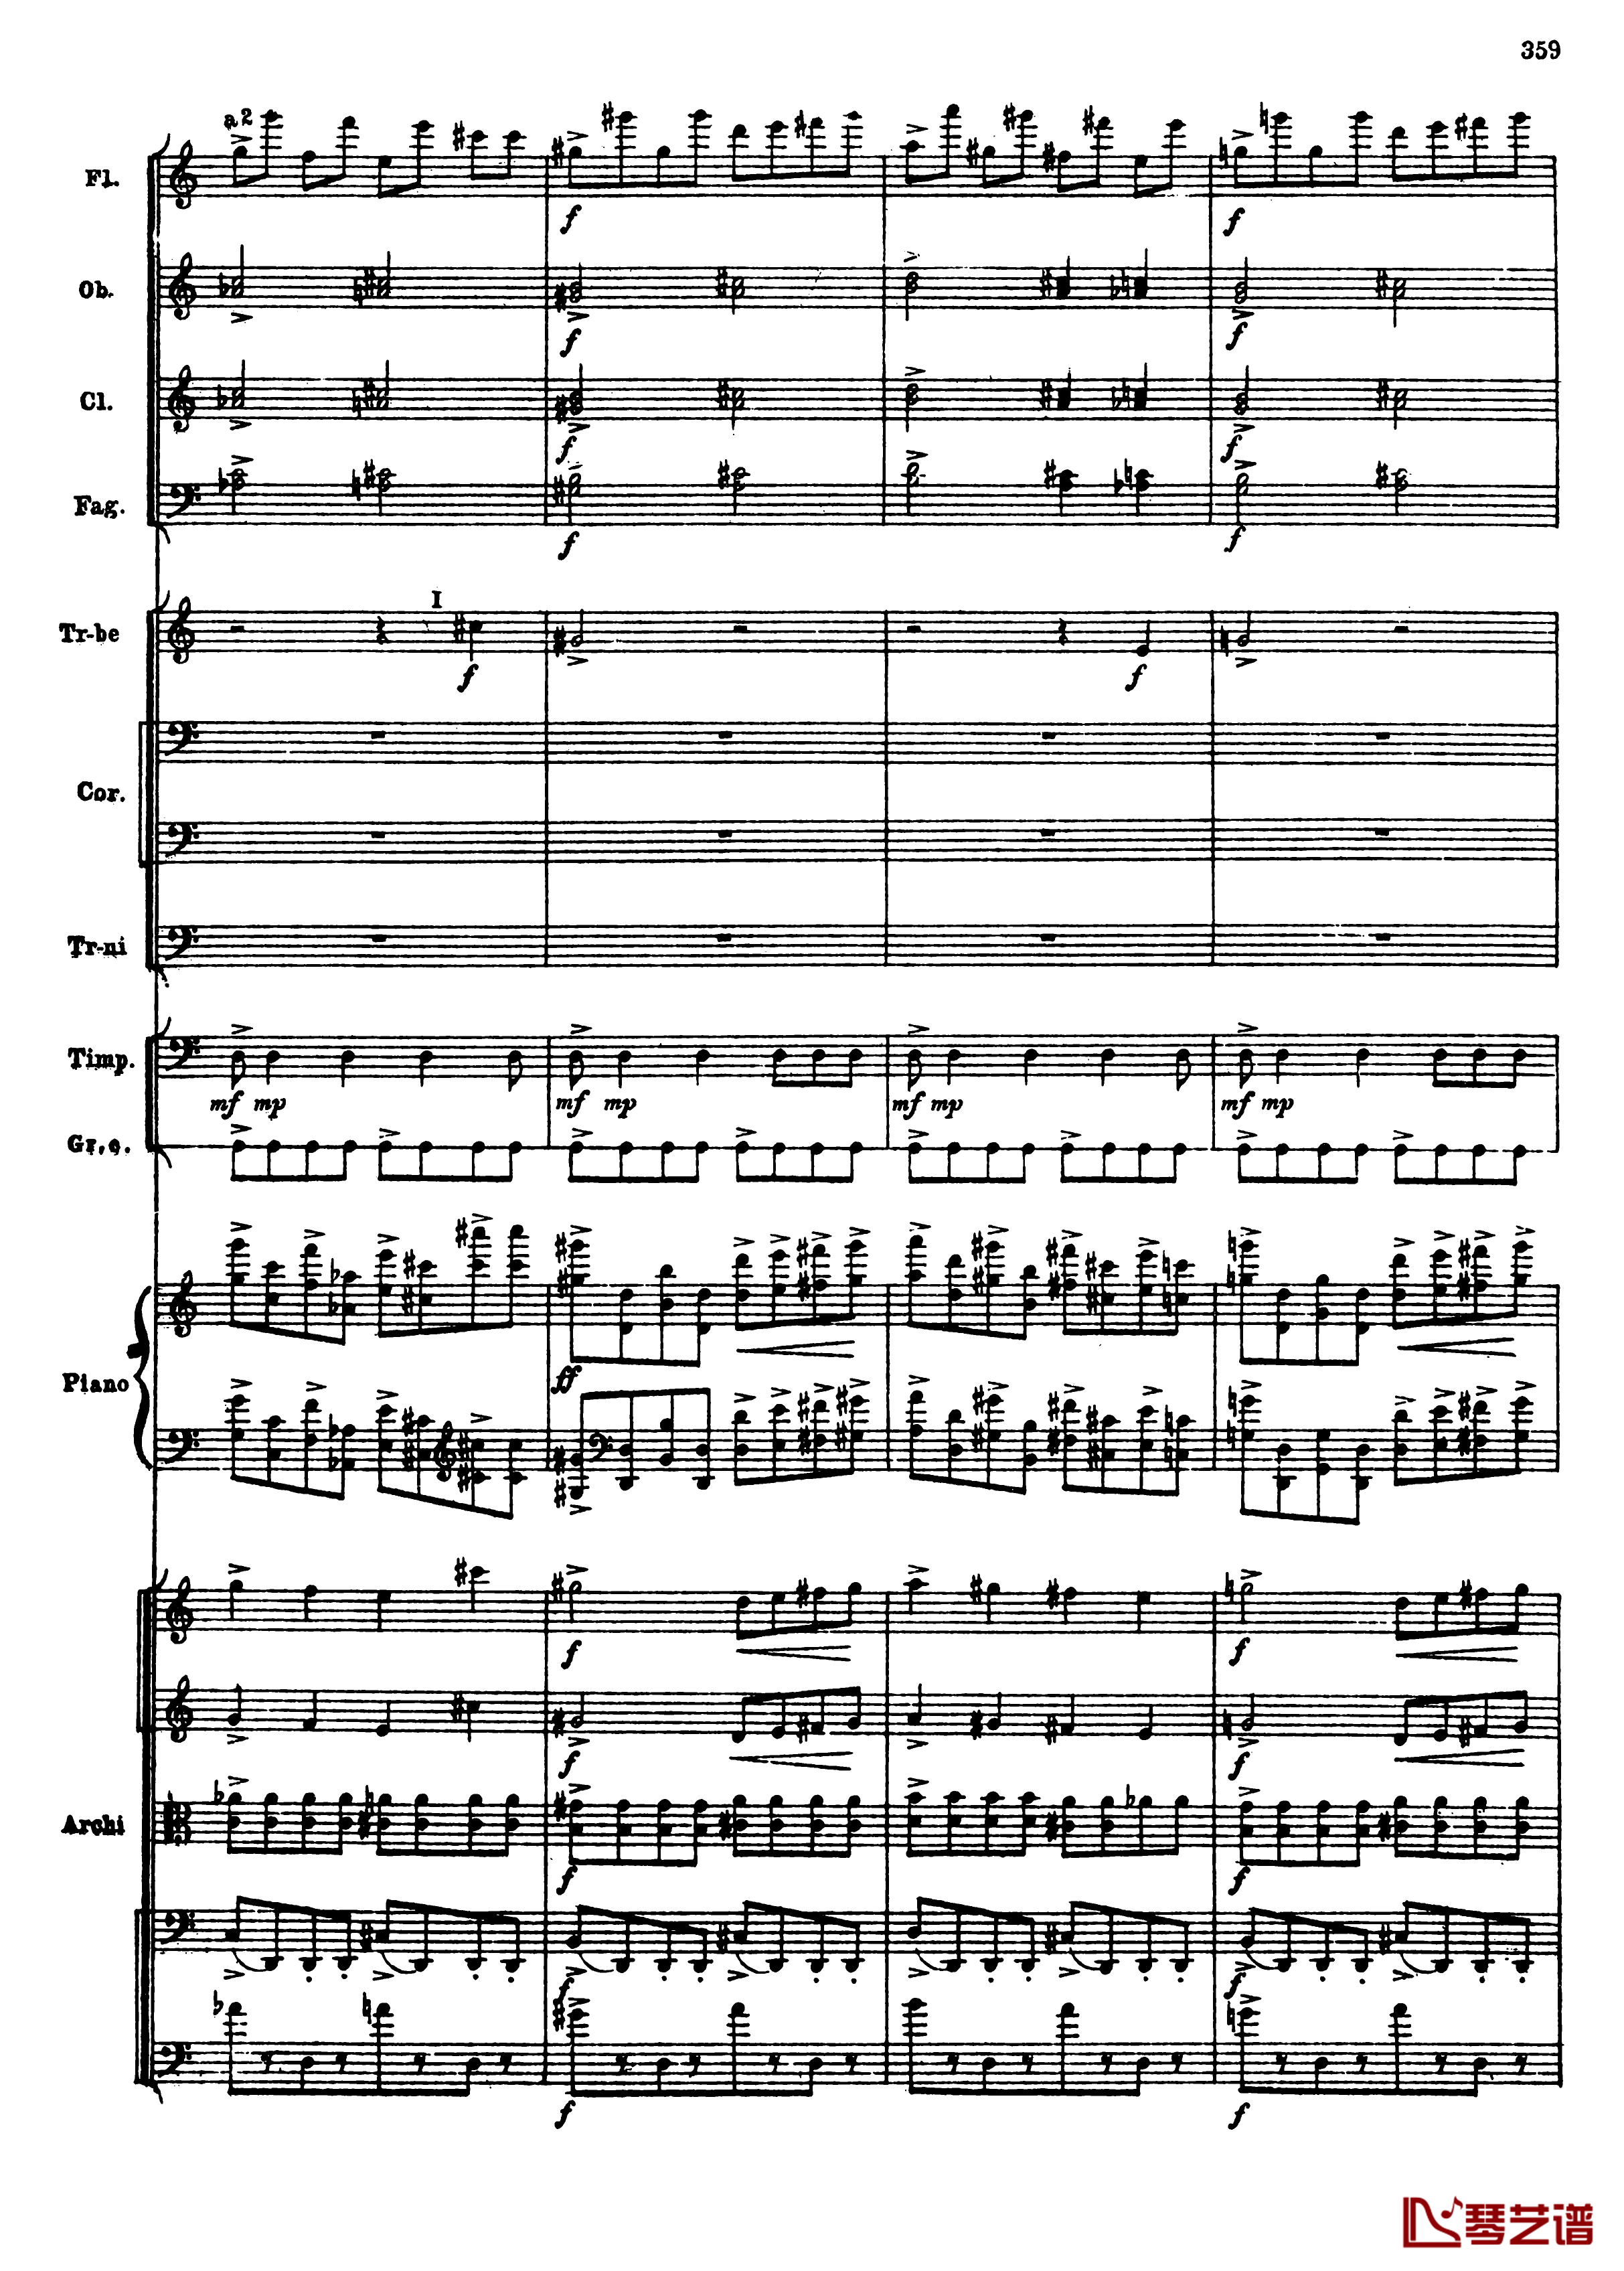 普罗科菲耶夫第三钢琴协奏曲钢琴谱-总谱-普罗科非耶夫91